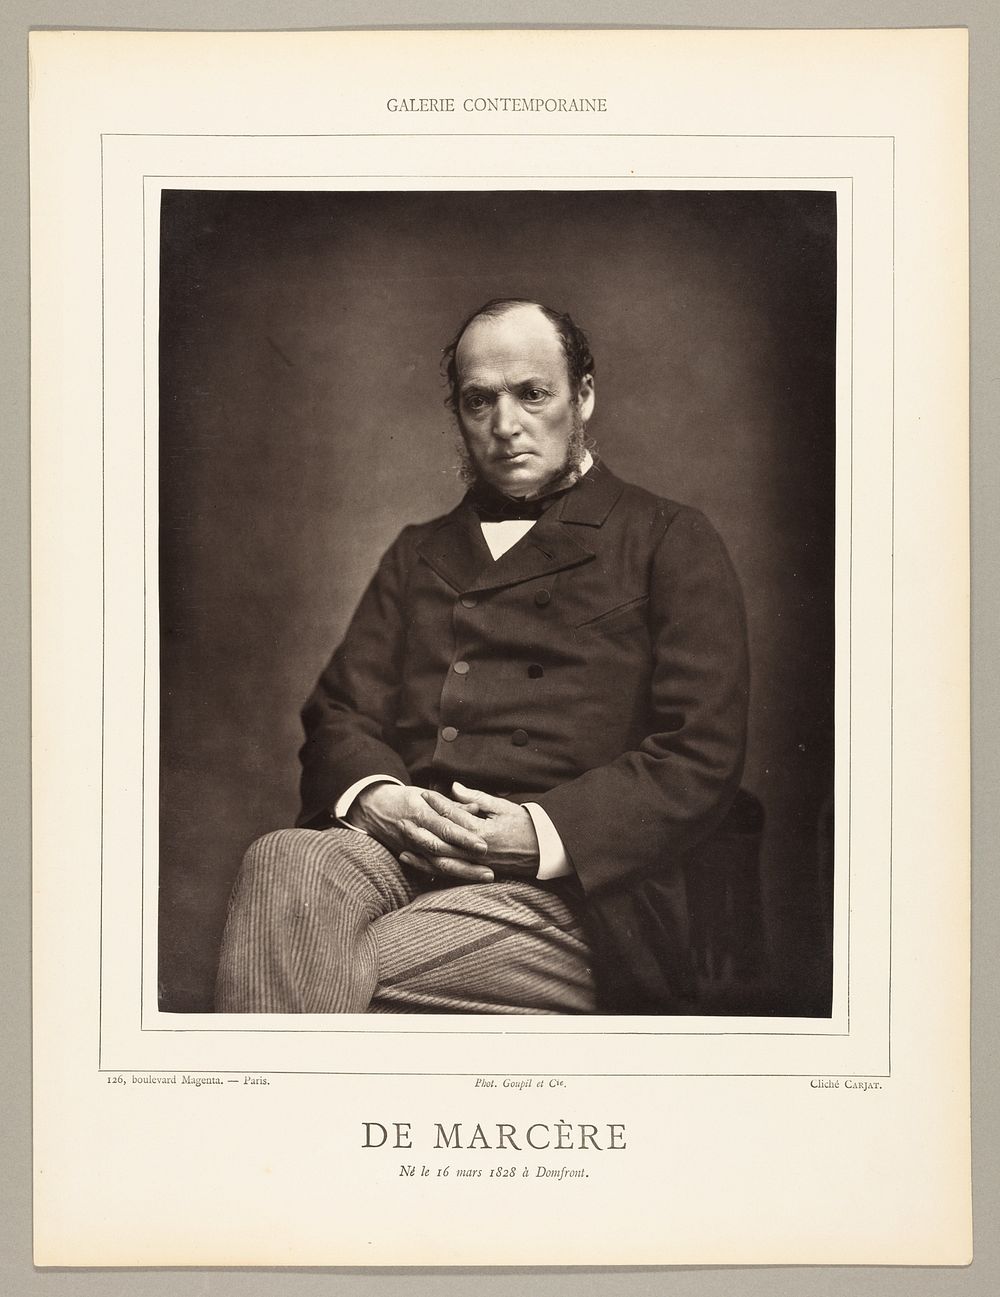 Émile Deshayes de Marère (French politician, 1828-1918) by Etienne Carjat